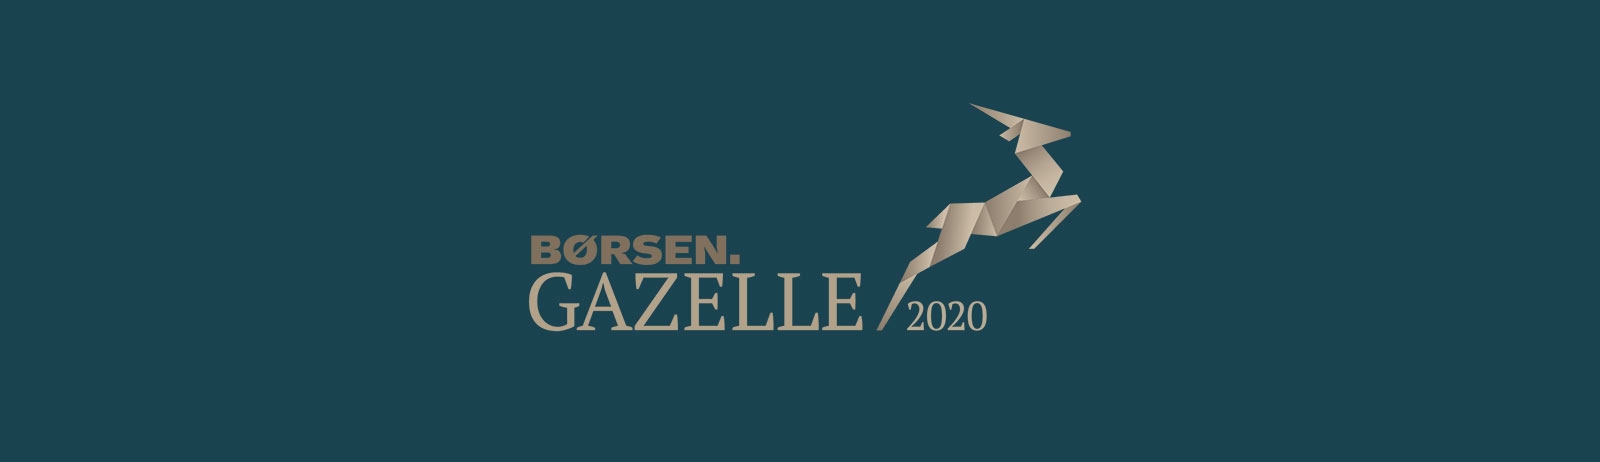 DBI Certfication er blevet kåret til Børsen Gazelle 2020